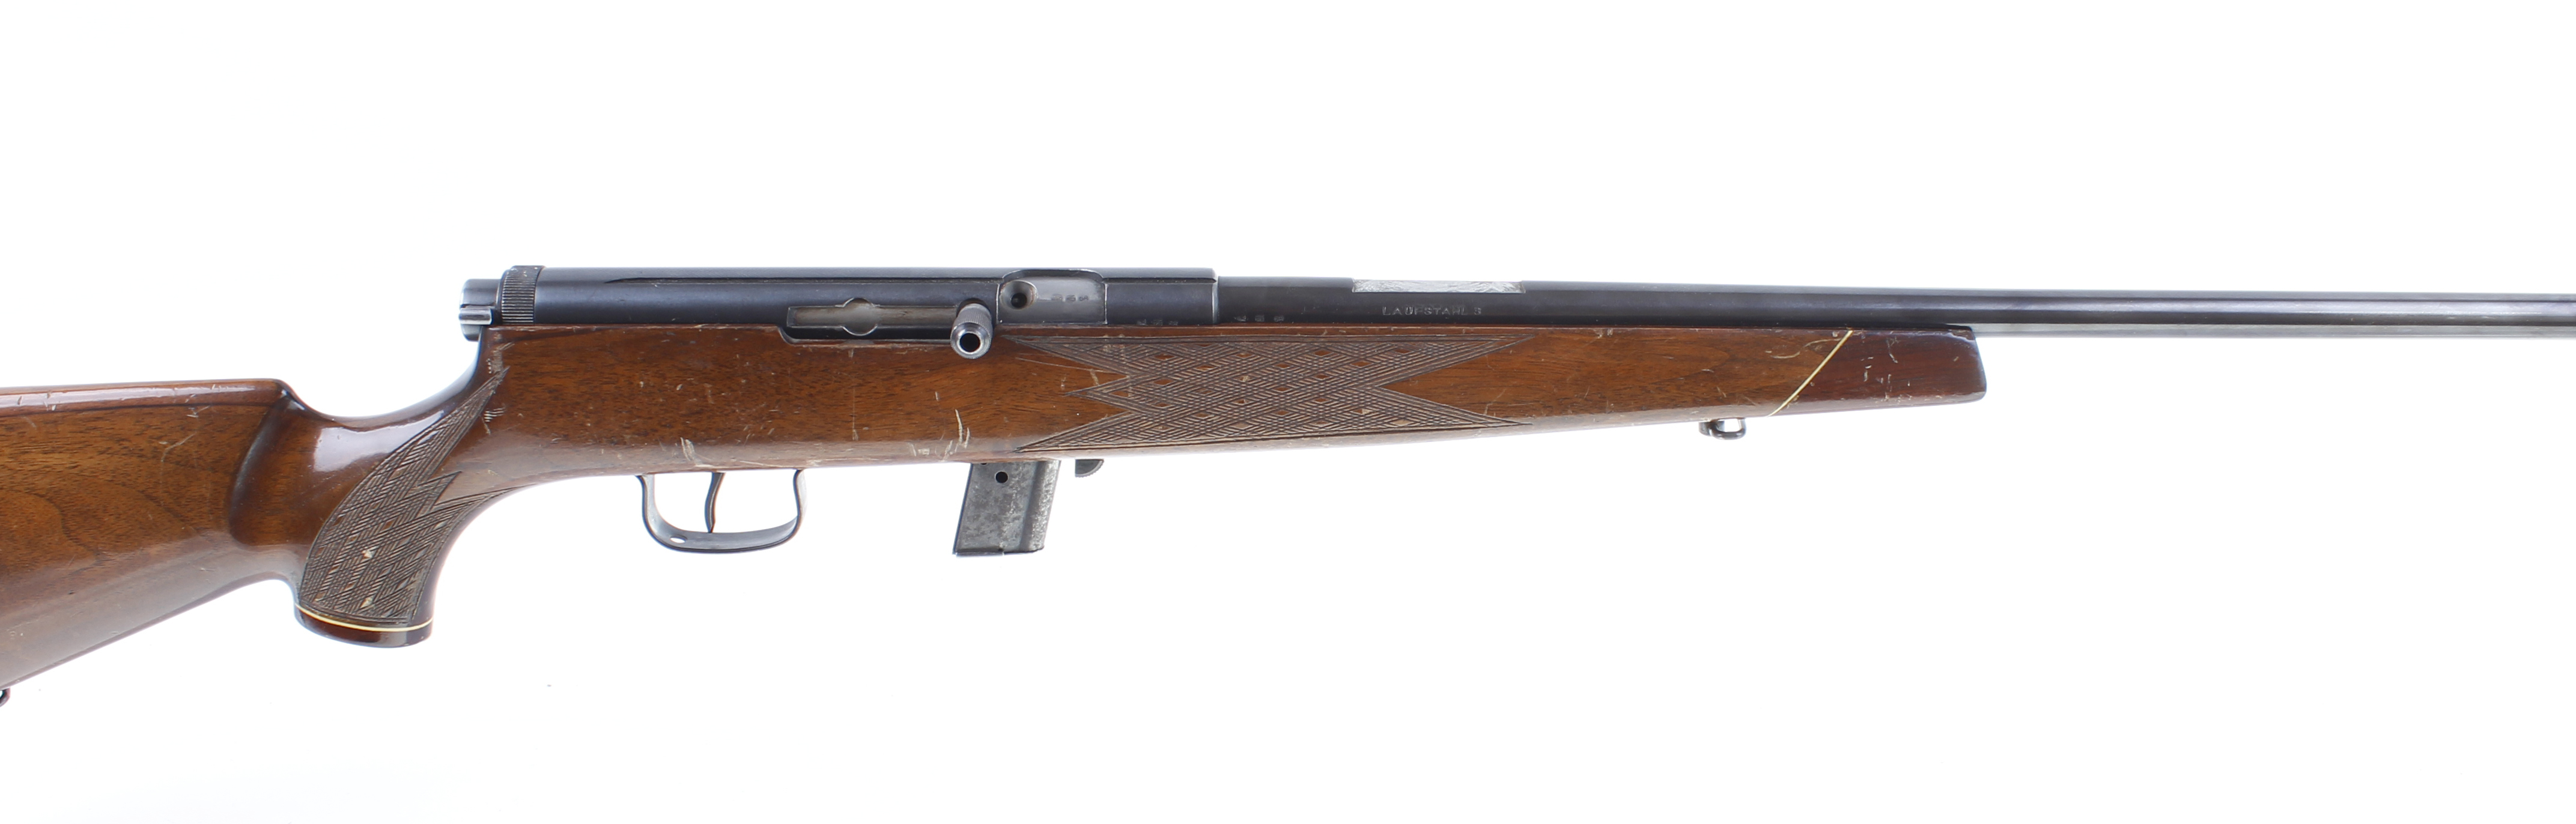 S1 .22 Voere (Austria) 'Laufstahl 3' semi automatic rifle, 21½ ins barrel (sights removed), 10